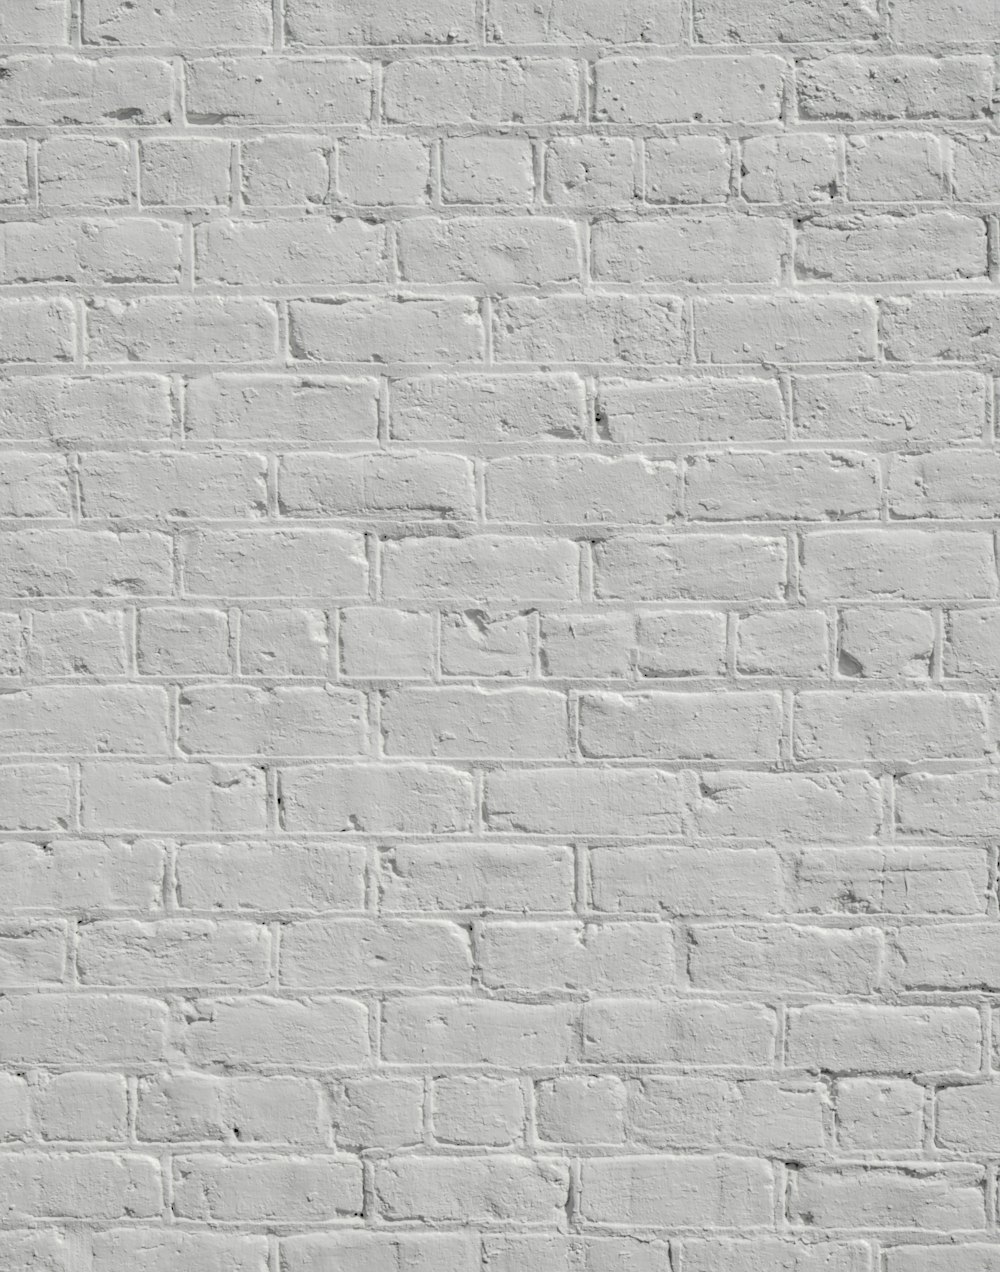 un mur de briques blanches sans mortiers ni mortiers